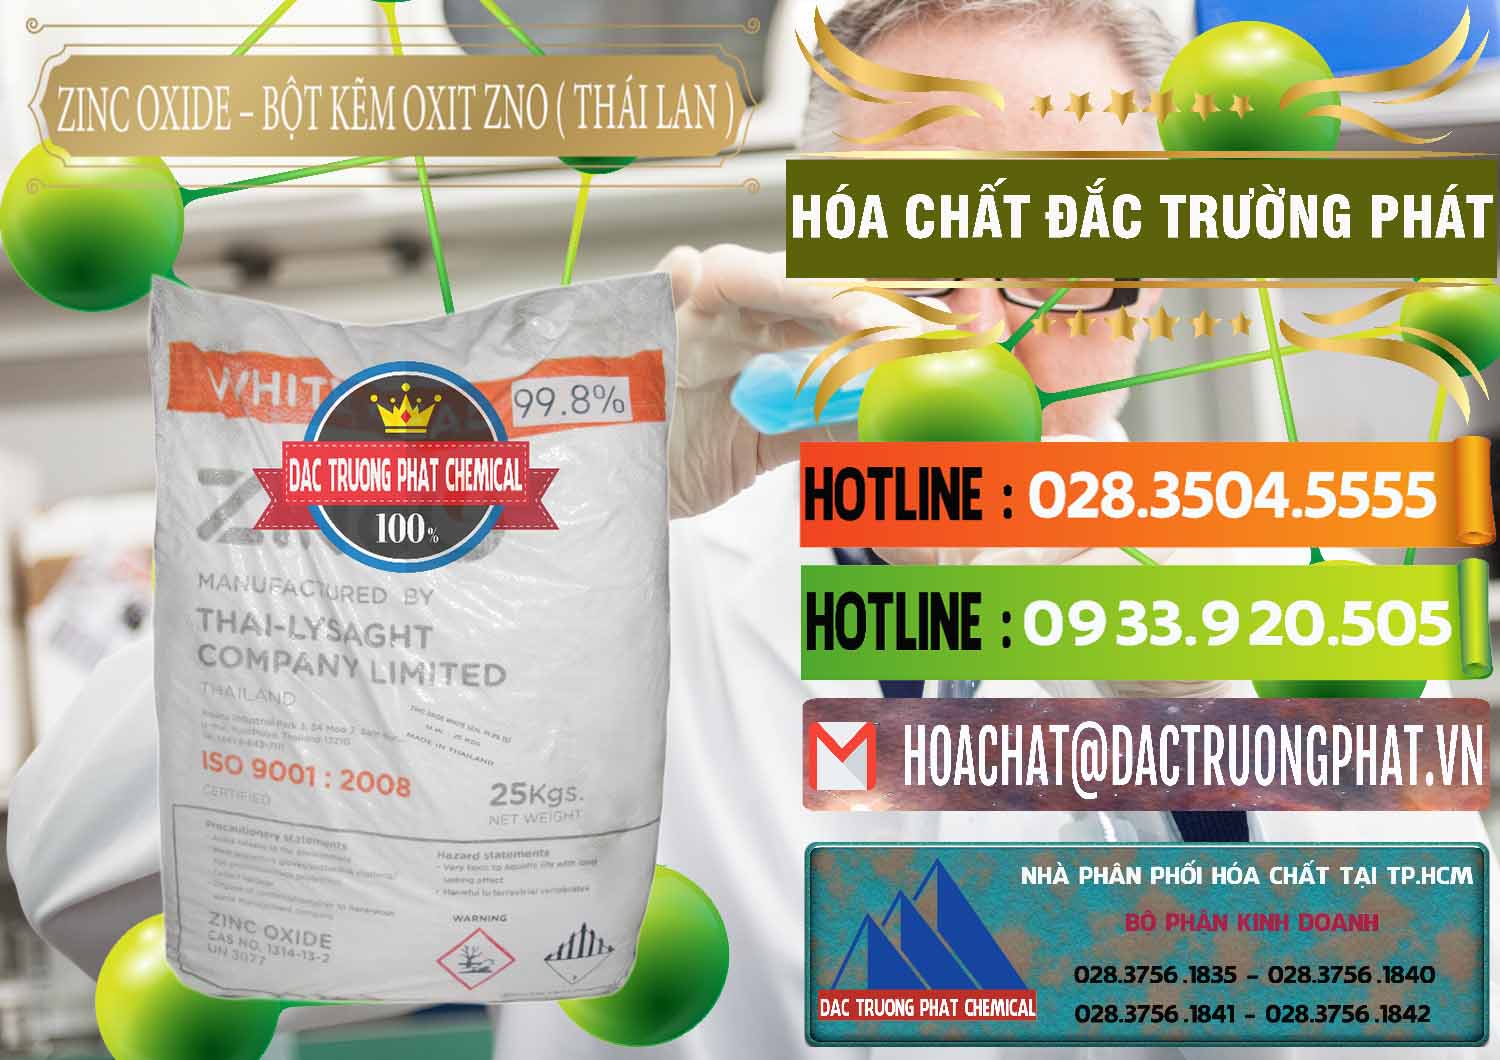 Công ty bán và cung ứng Zinc Oxide - Bột Kẽm Oxit ZNO Thái Lan Thailand - 0181 - Cty chuyên kinh doanh - phân phối hóa chất tại TP.HCM - cungcaphoachat.com.vn